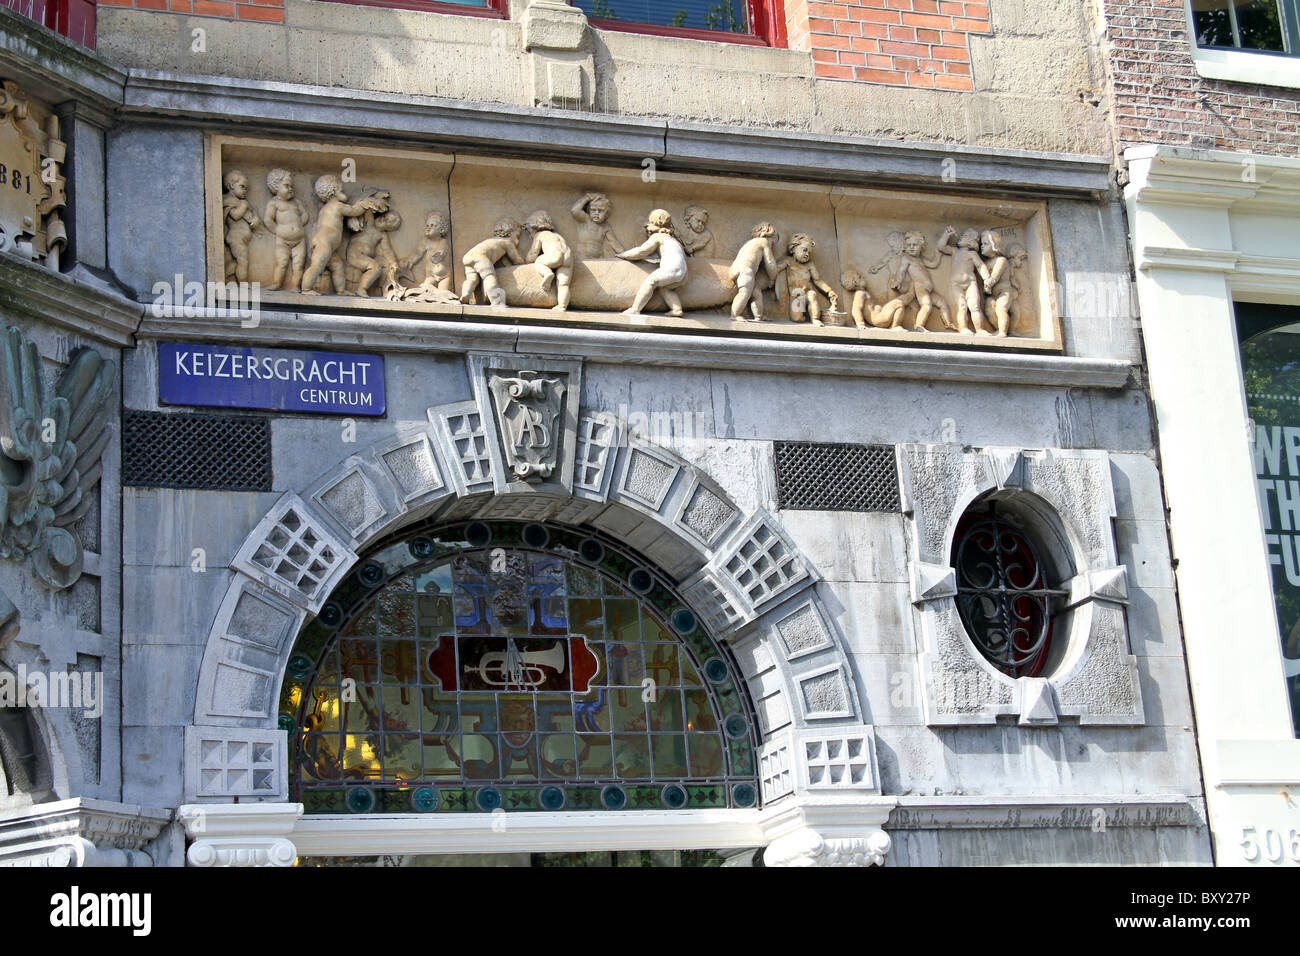 Decorazioni a parete su un negozio in Keizersgracht in Amsterdam, Olanda Foto Stock